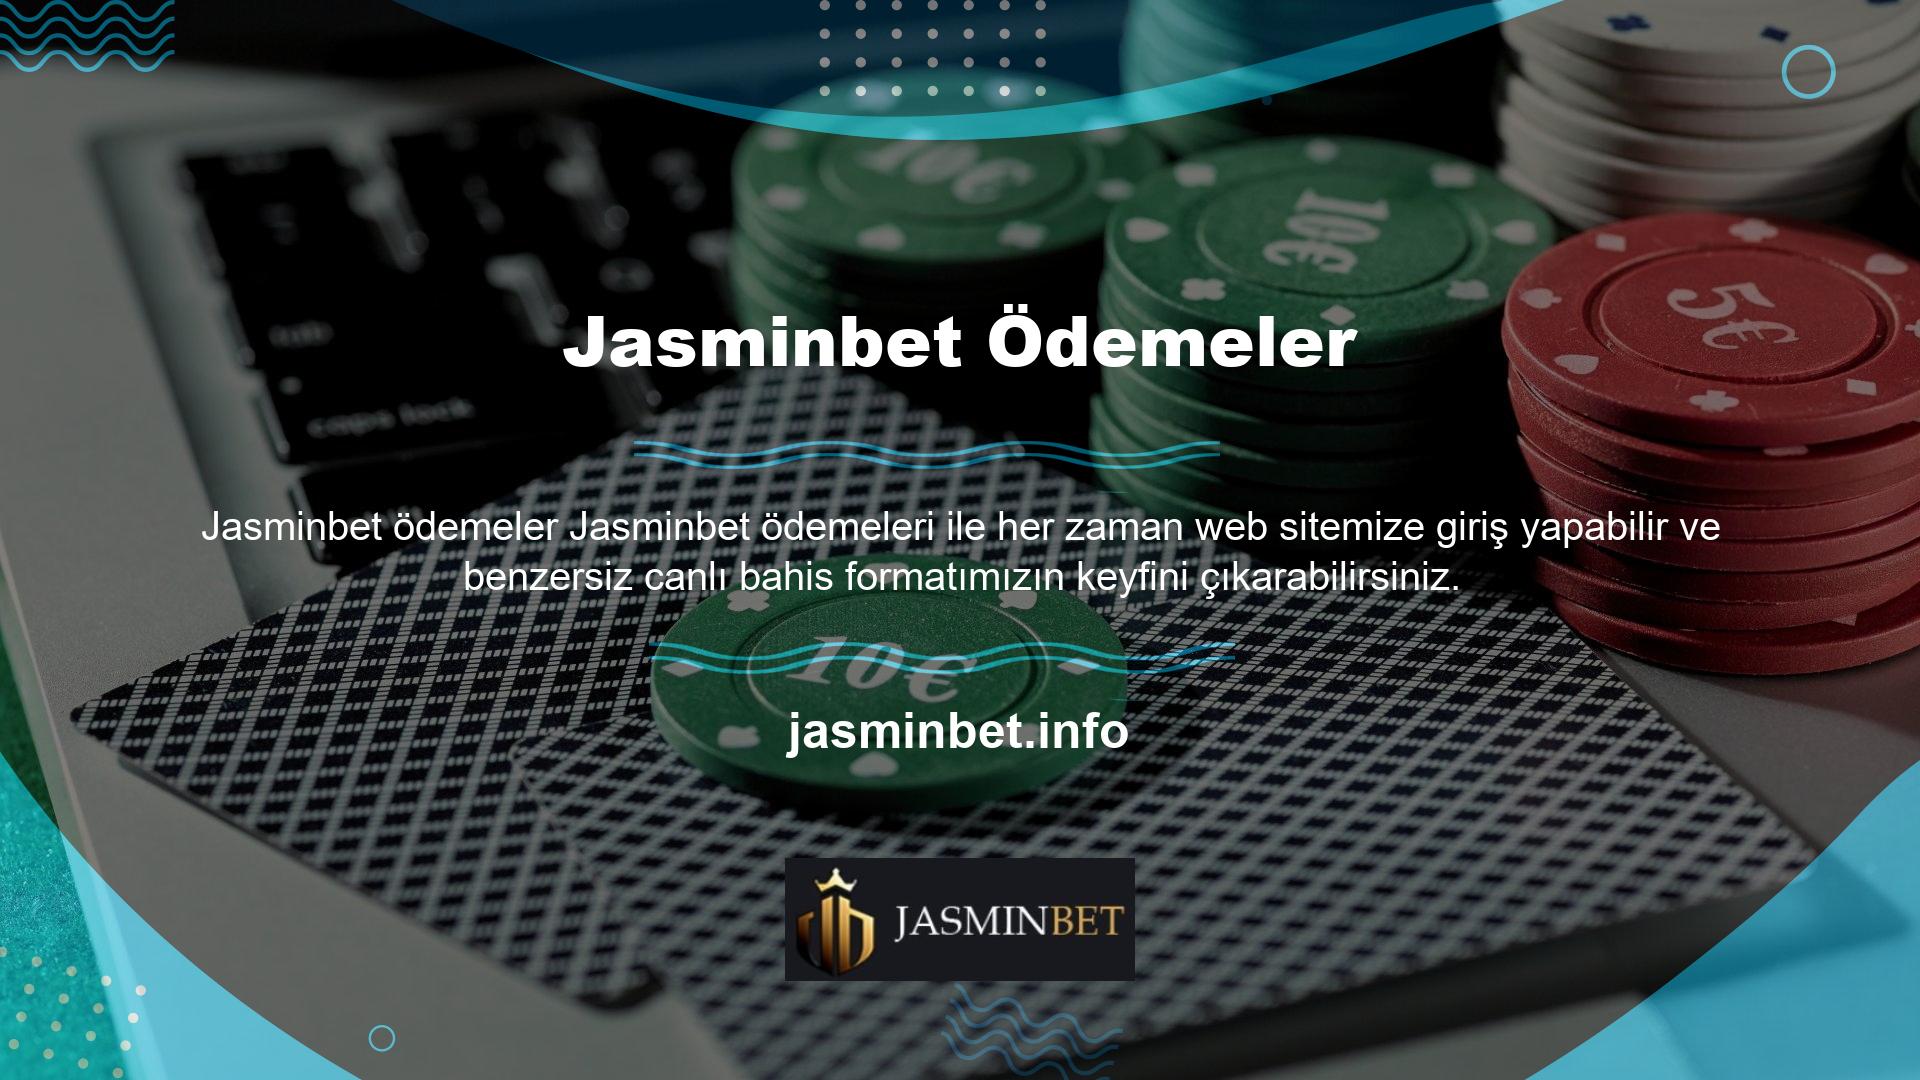 Jasminbet üyeliğinden ayrılma Türkiye’nin en güvenilir bahis sitelerinden biri olan Jasminbet, en son promosyonları ve mükemmelliği ile dikkat çekiyor